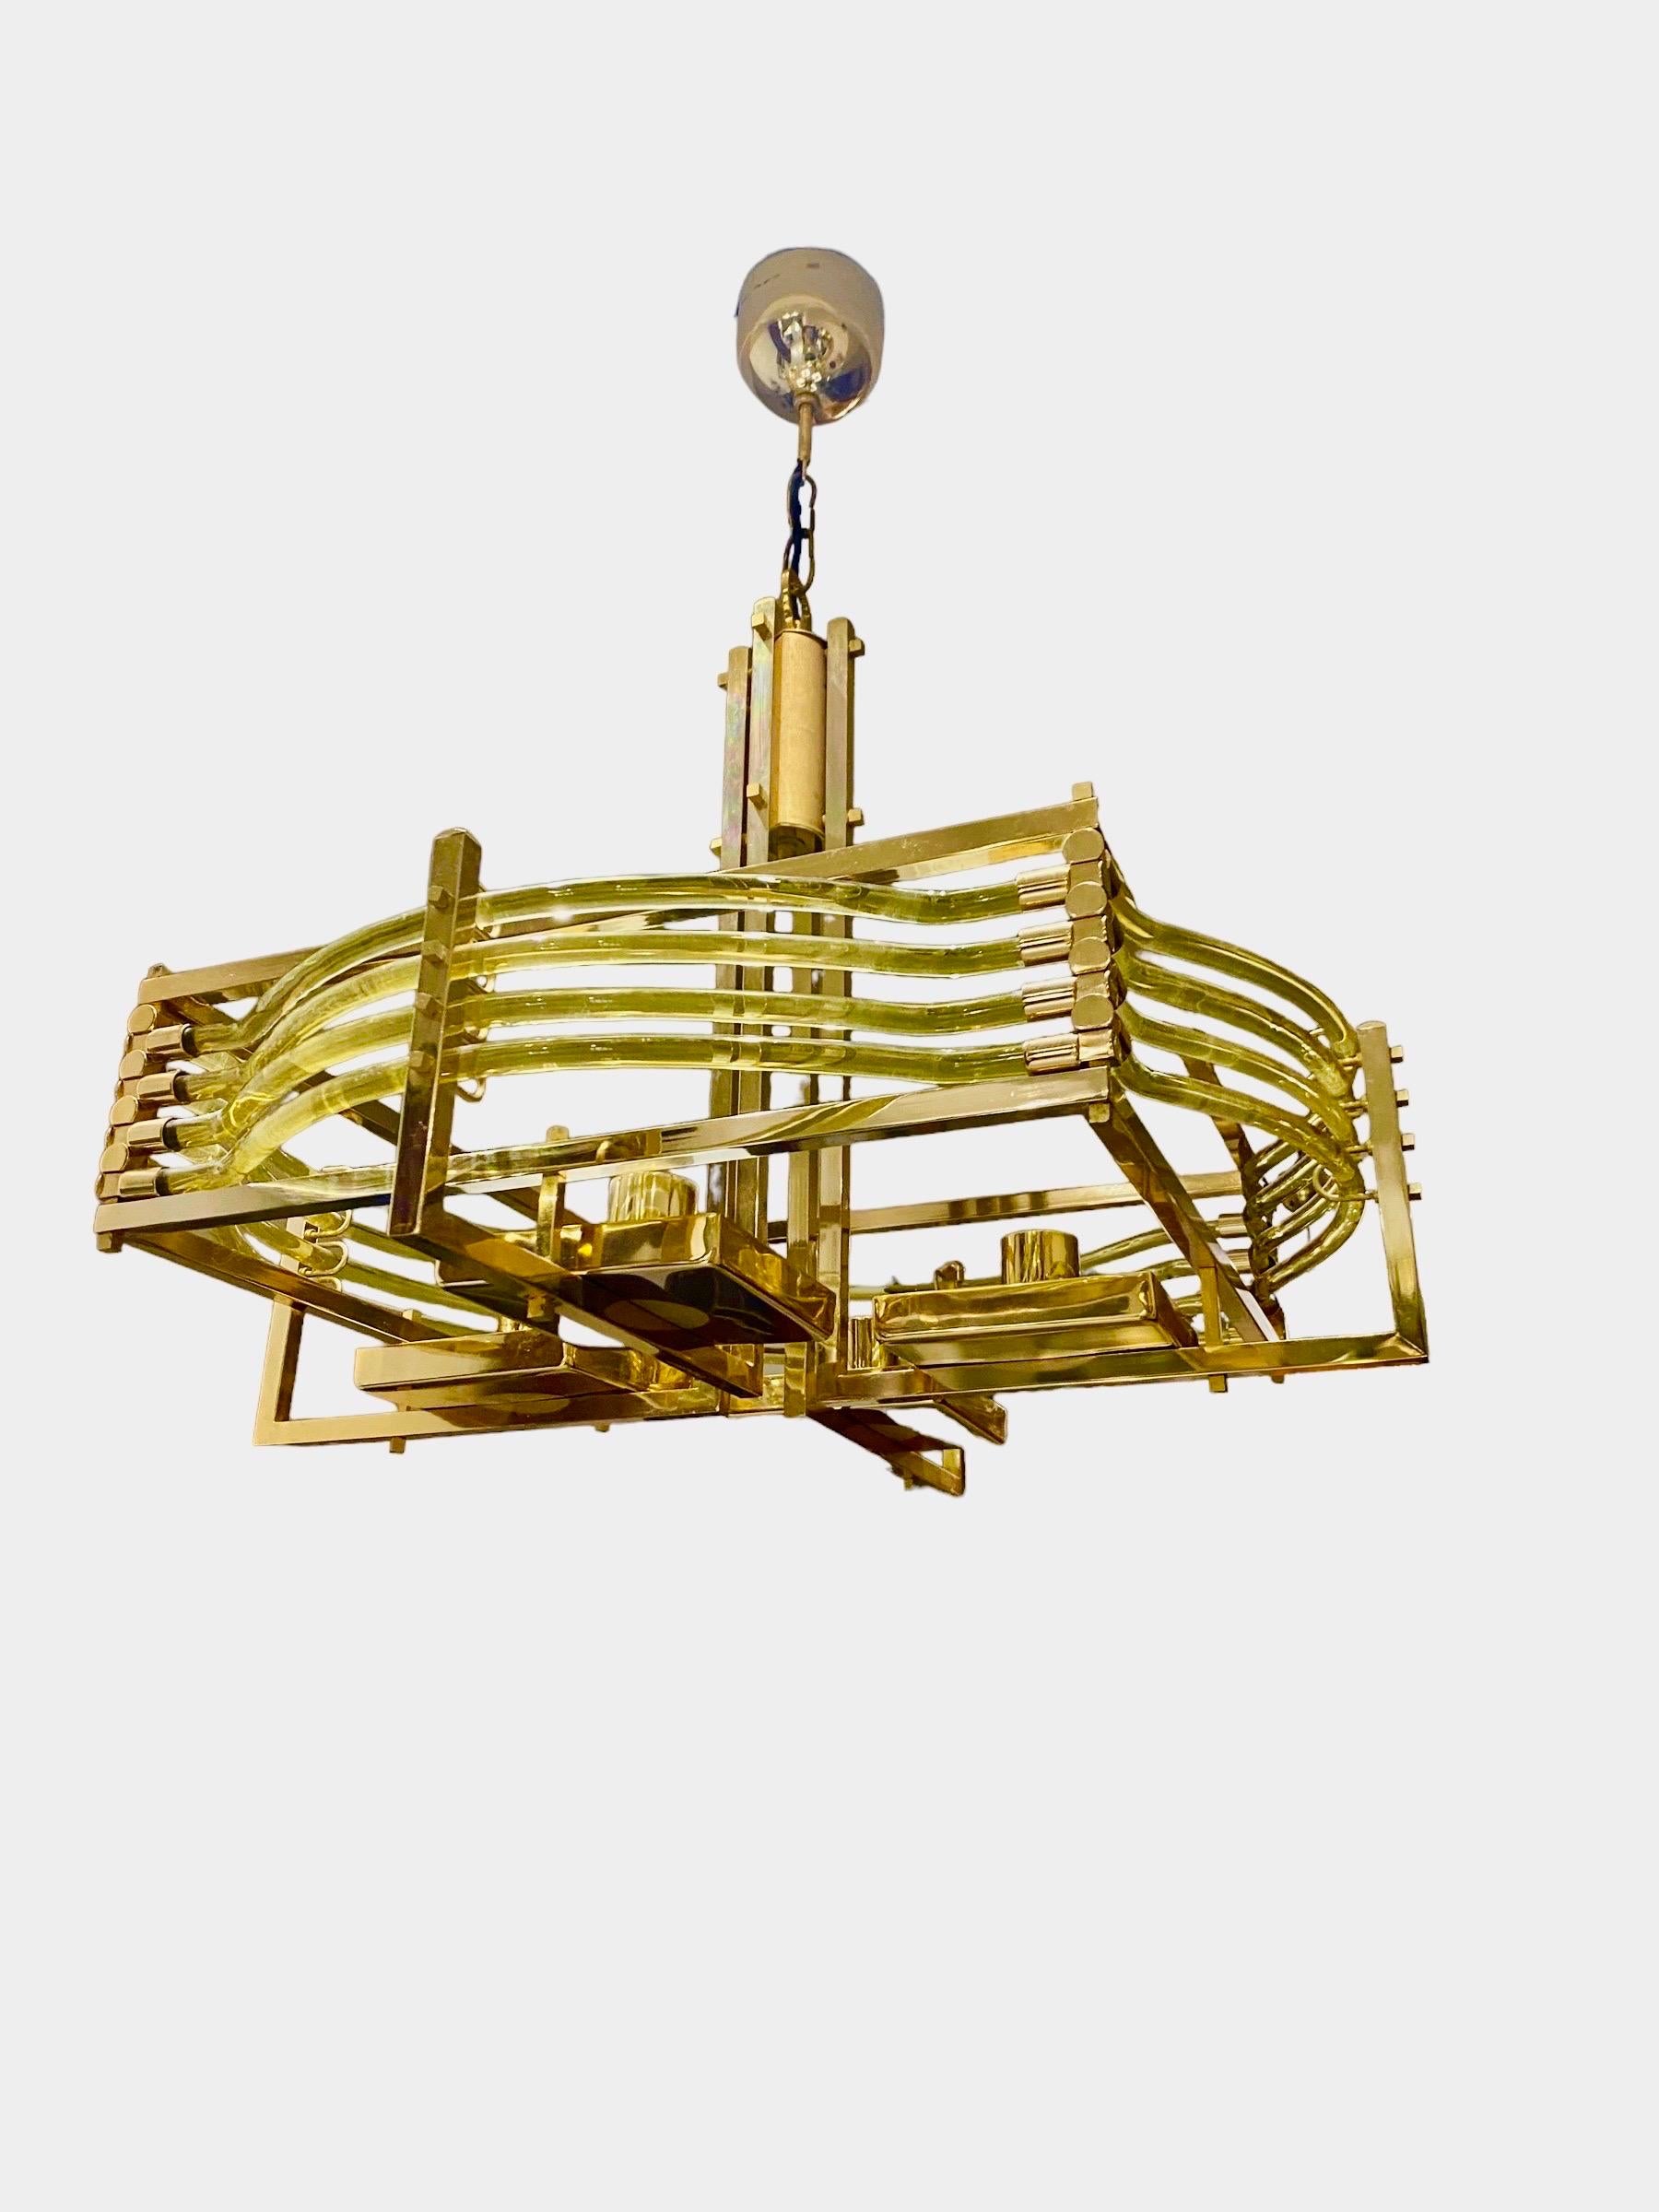 Italian Gaetano Sciolari Chandelier Glass Murano with Gold Plated Structure Model Unique